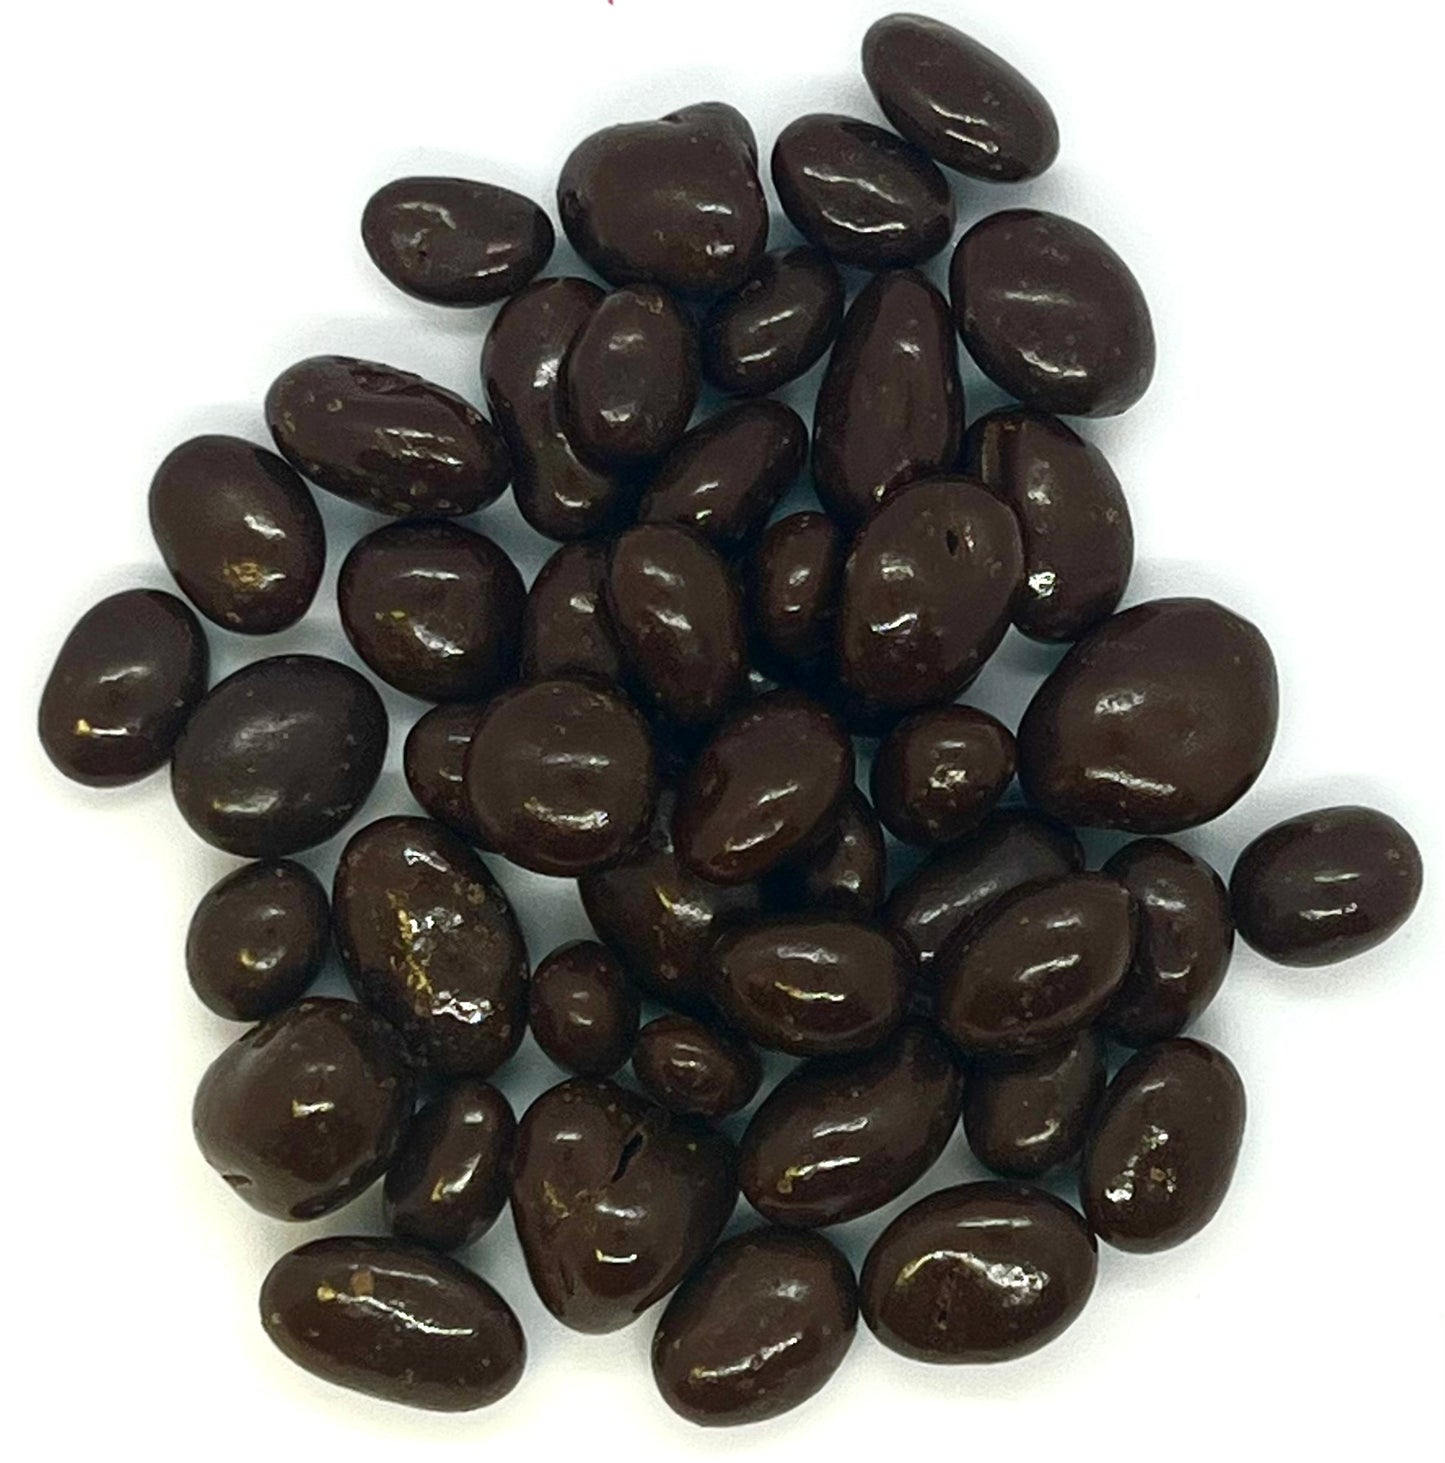 Dark chocolate raisins